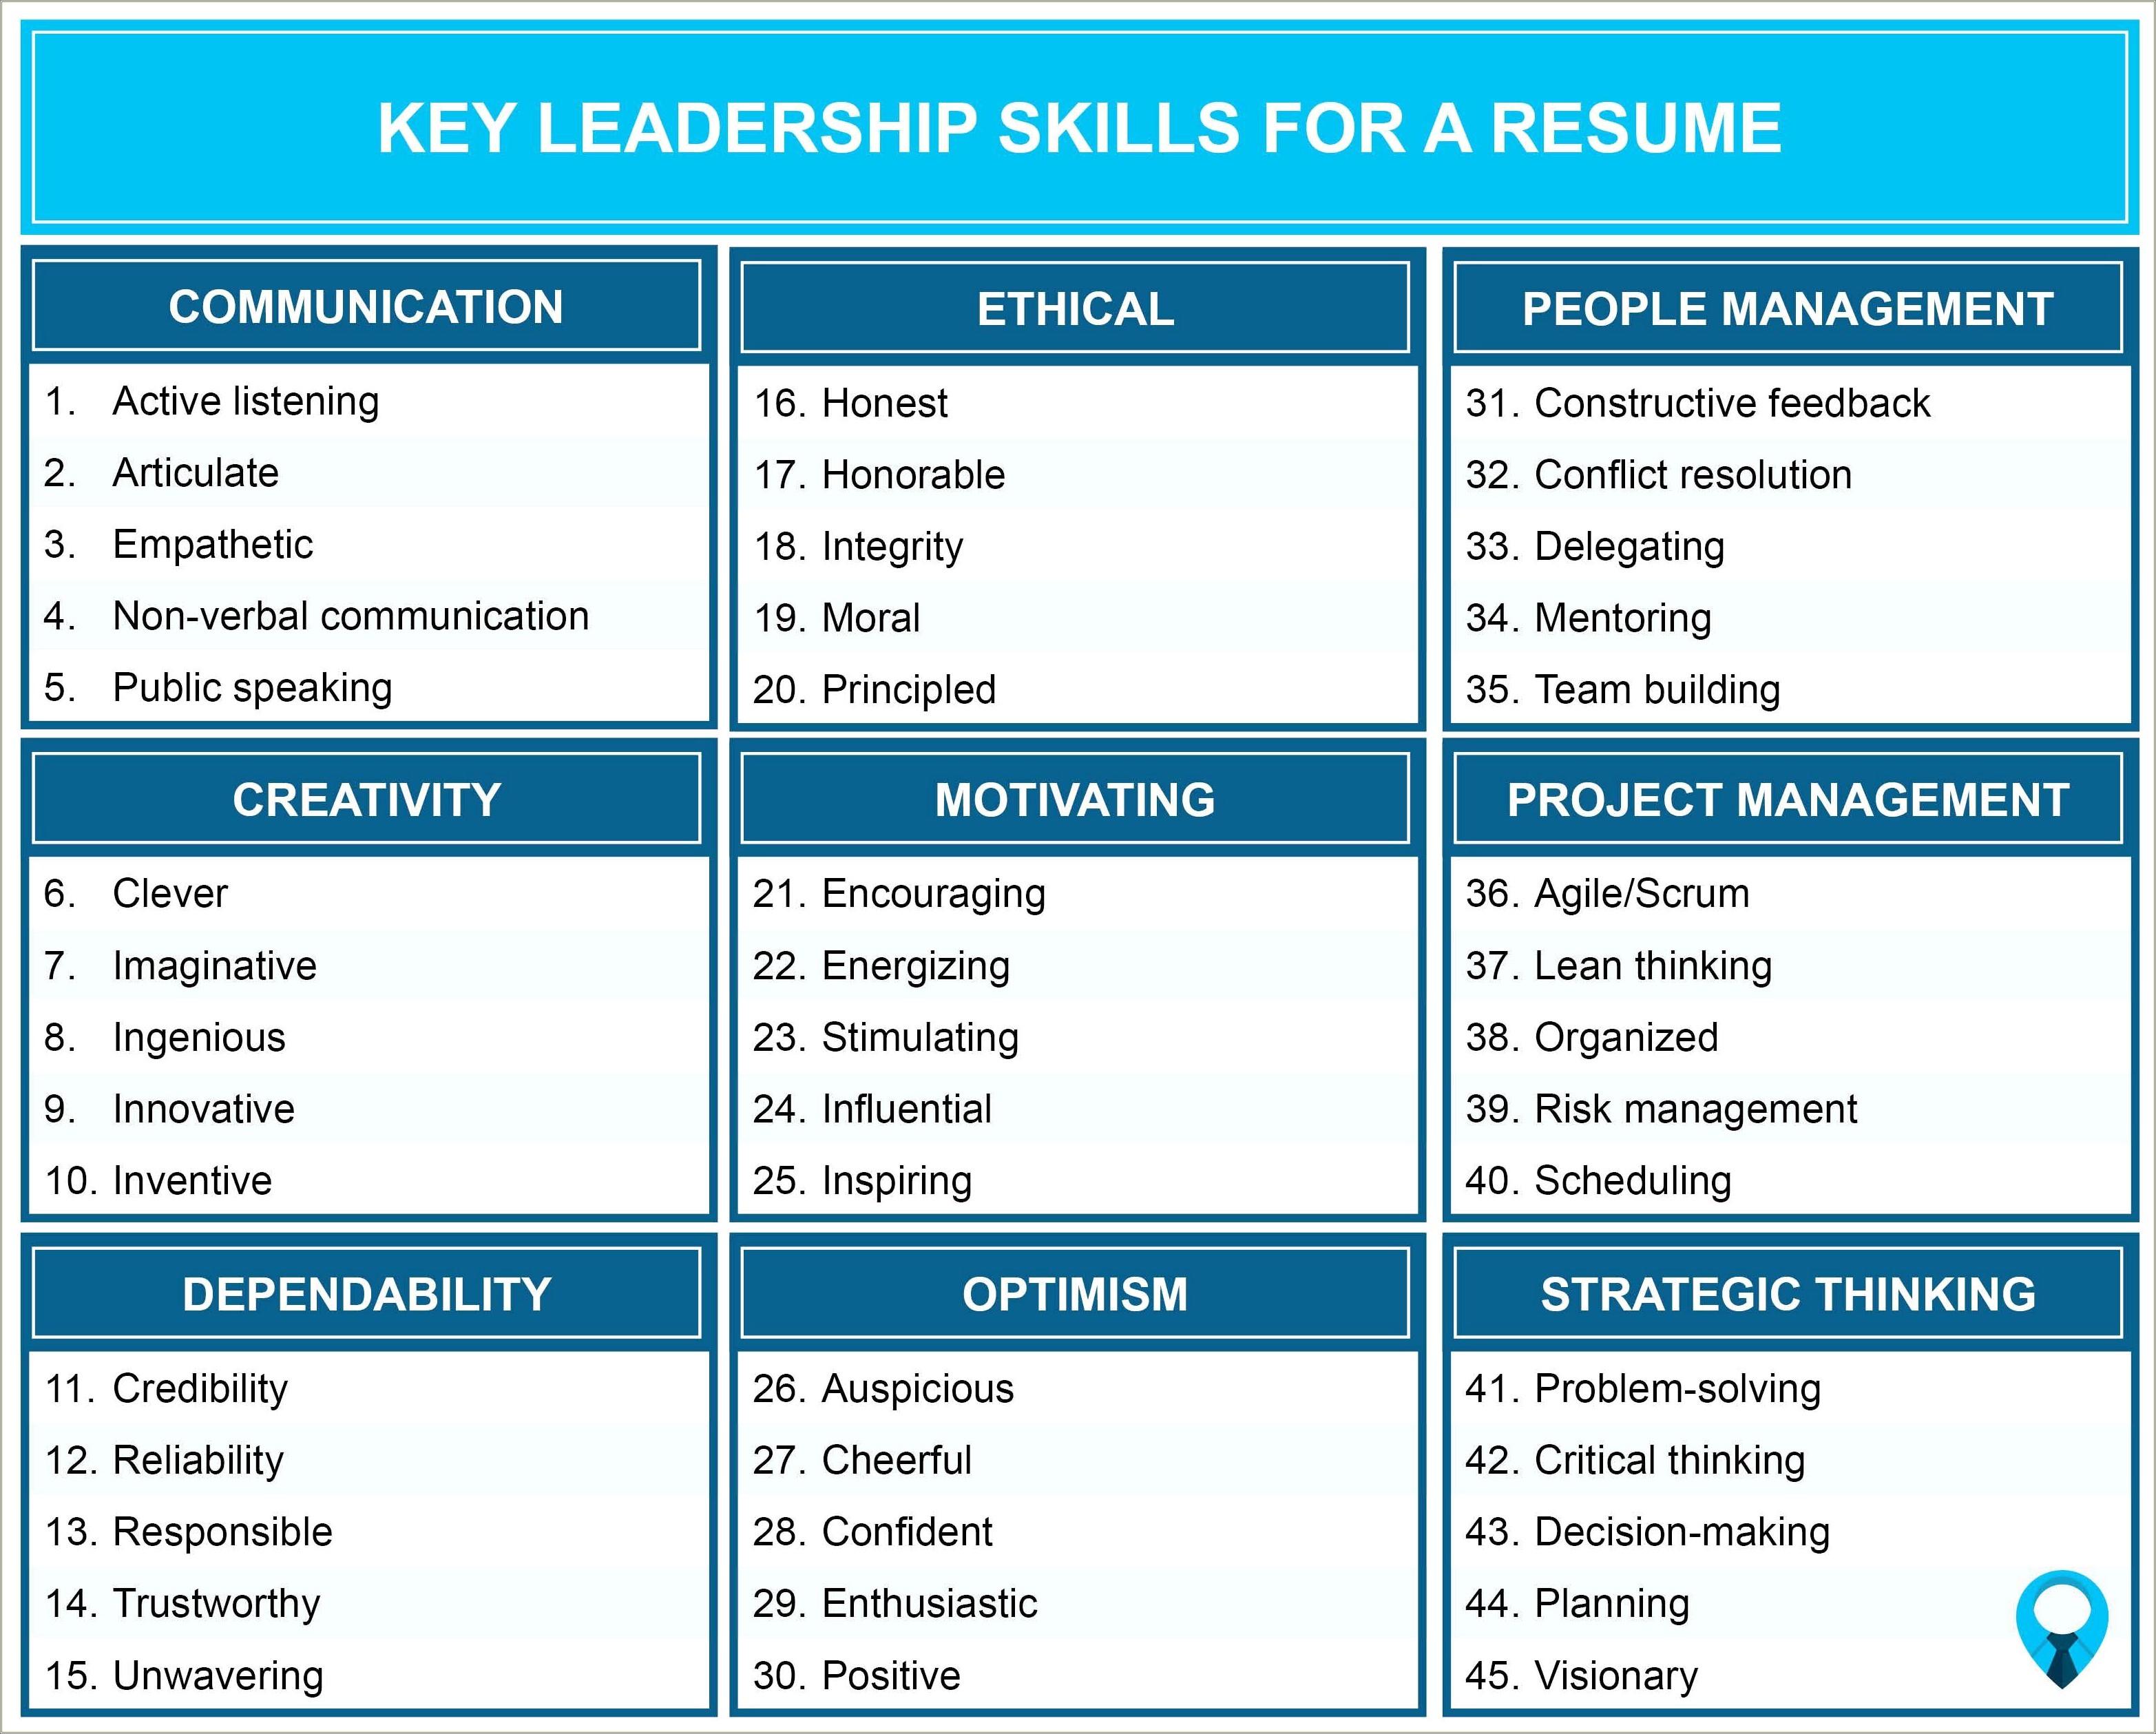 Communication Leadership Skills On Resume Example